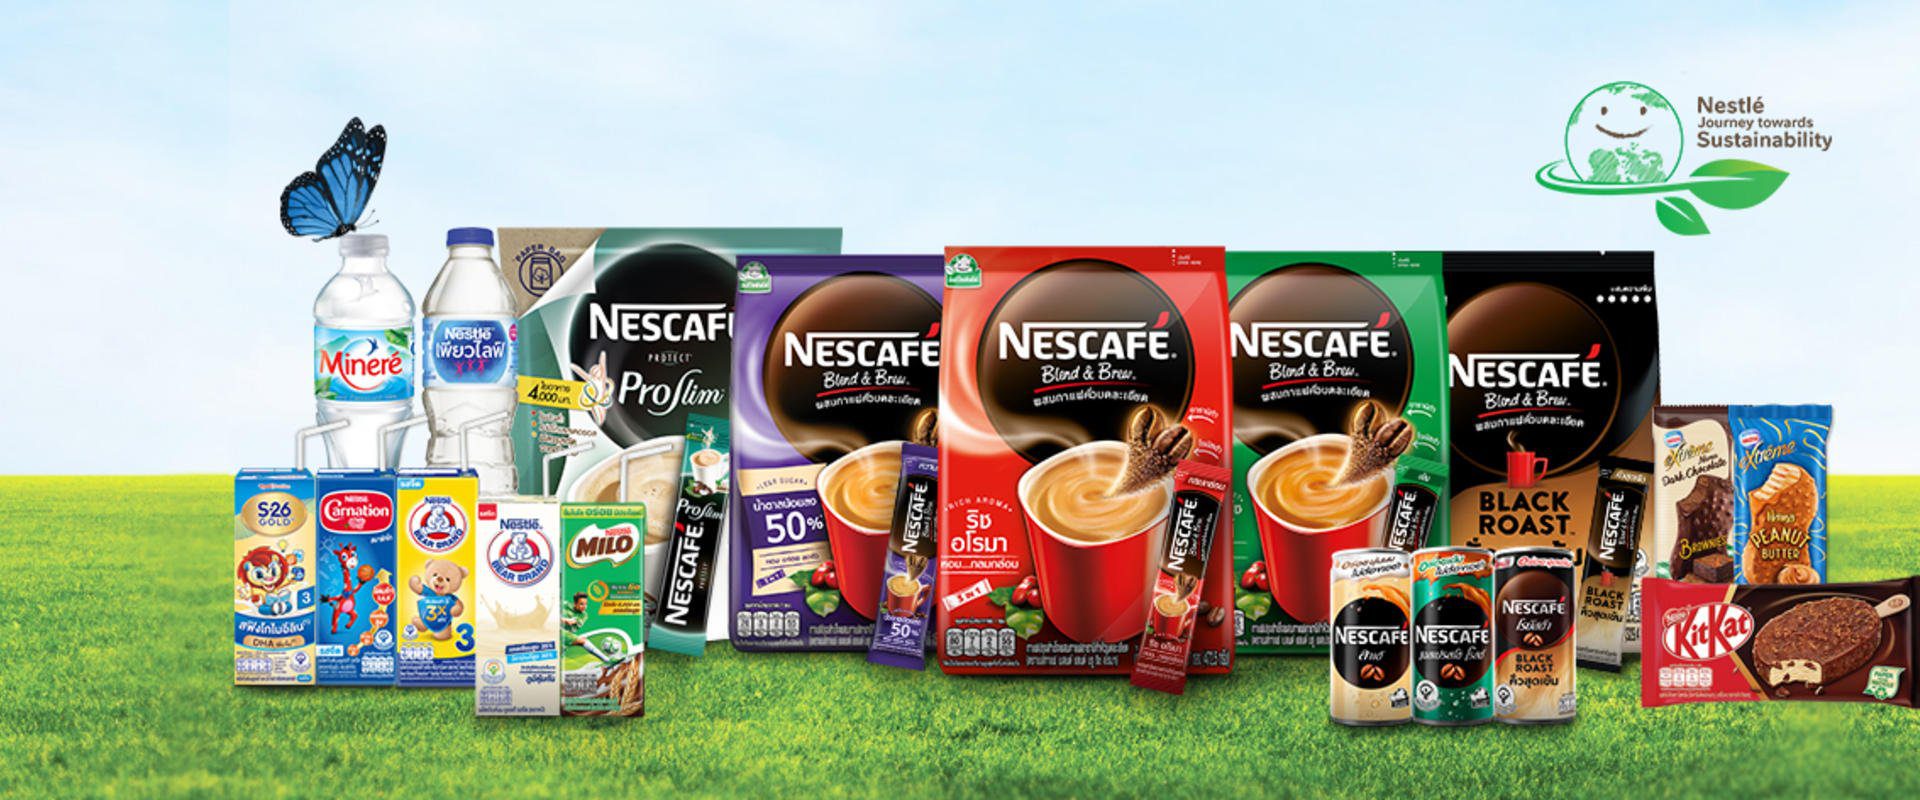 Nestle Sustainability